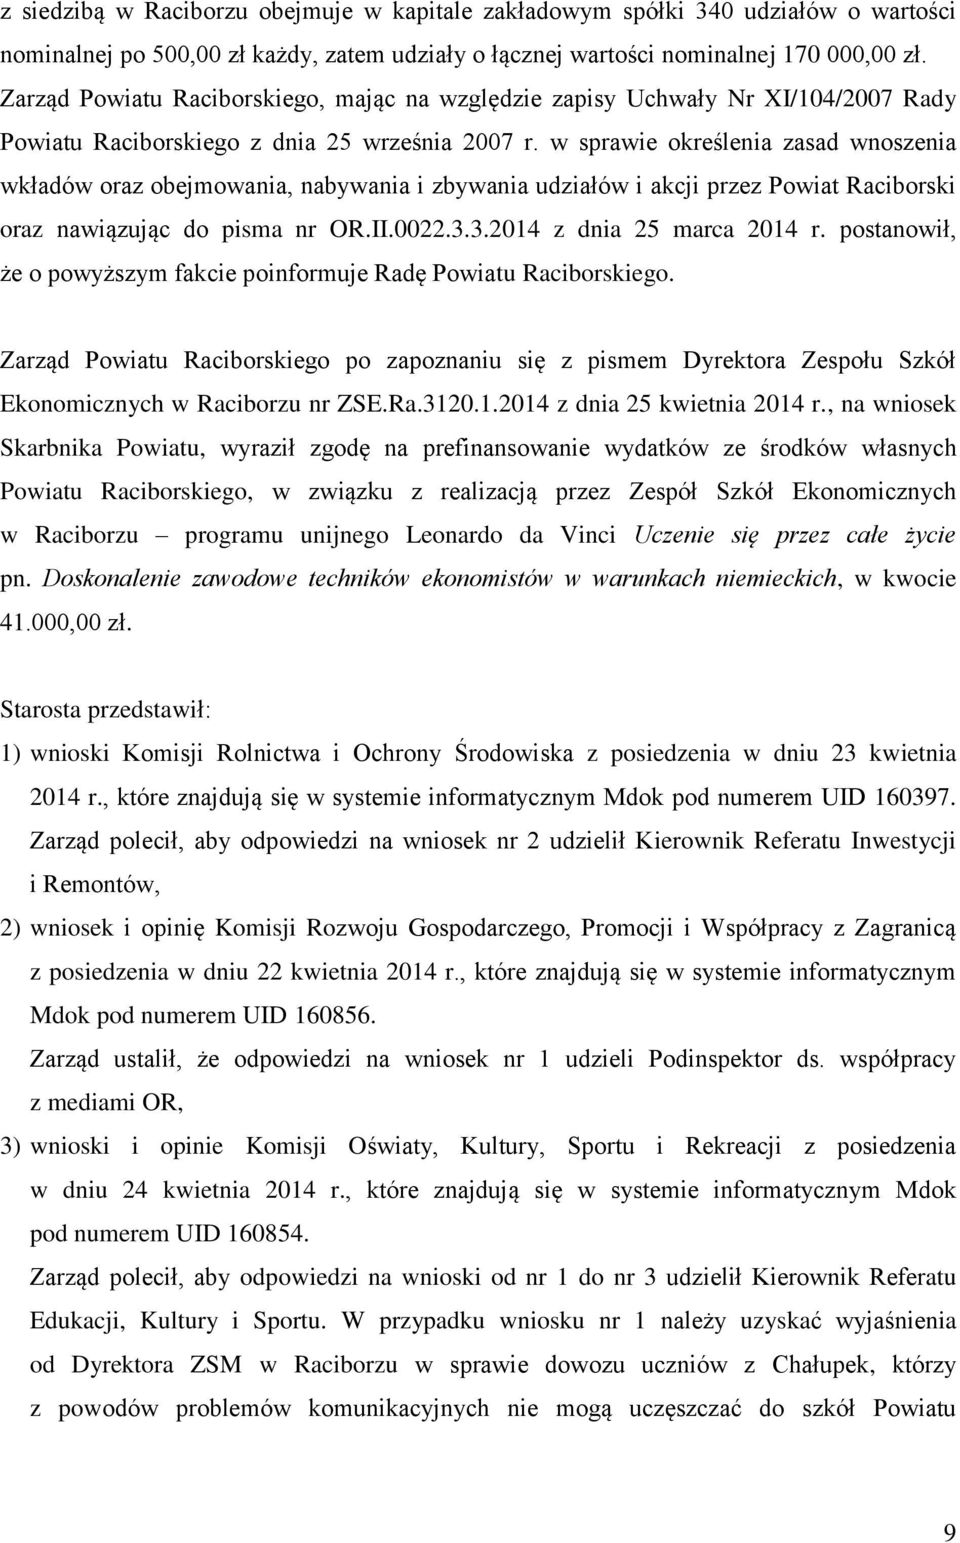 w sprawie określenia zasad wnoszenia wkładów oraz obejmowania, nabywania i zbywania udziałów i akcji przez Powiat Raciborski oraz nawiązując do pisma nr OR.II.0022.3.3.2014 z dnia 25 marca 2014 r.